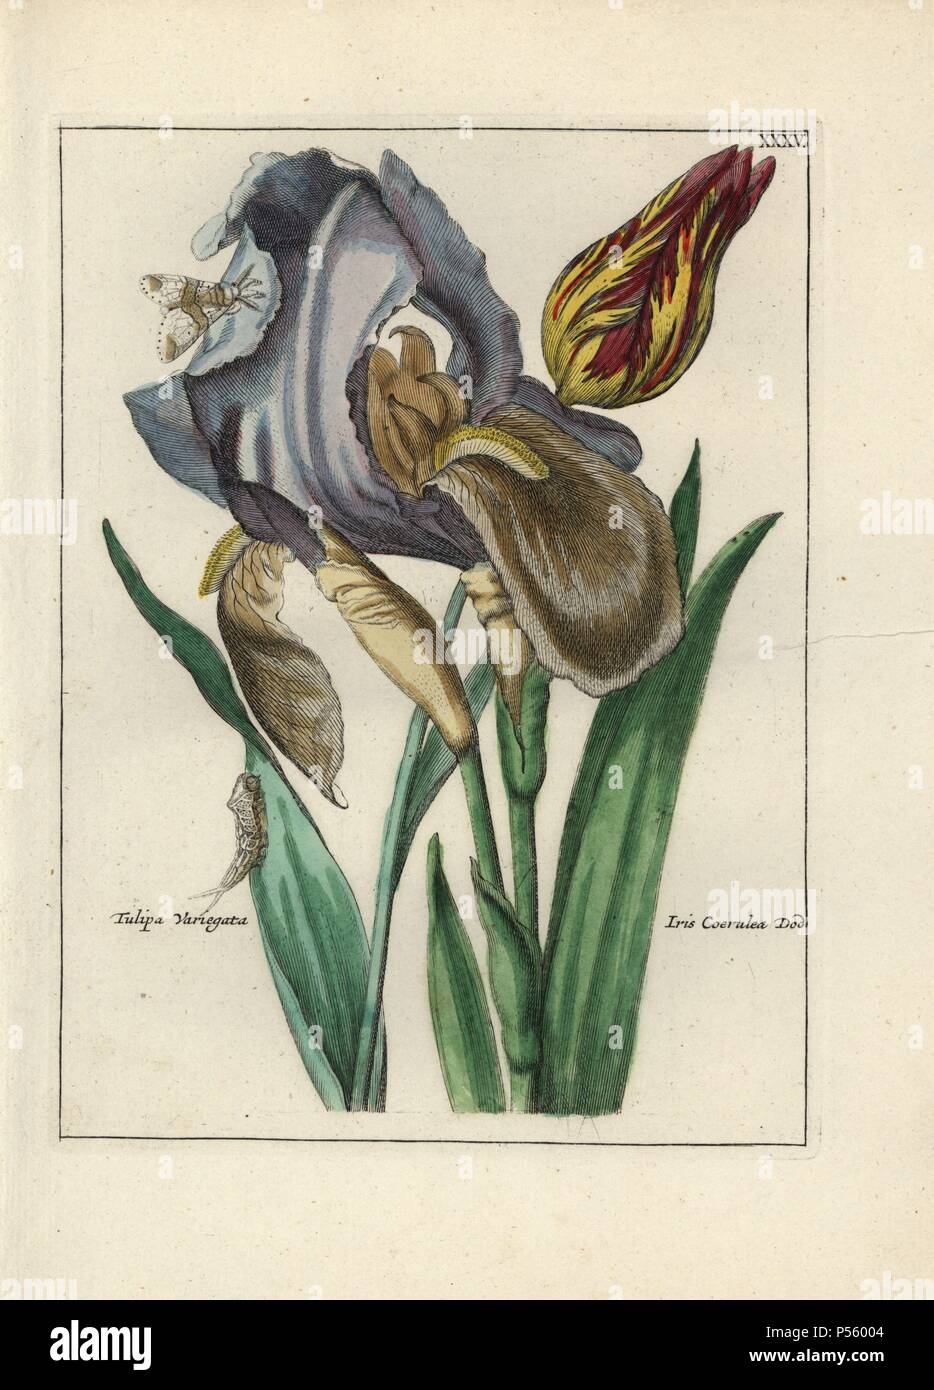 Variegated tulip, Tulipa variegata, and blue flag, Iris coerulea Dod ...